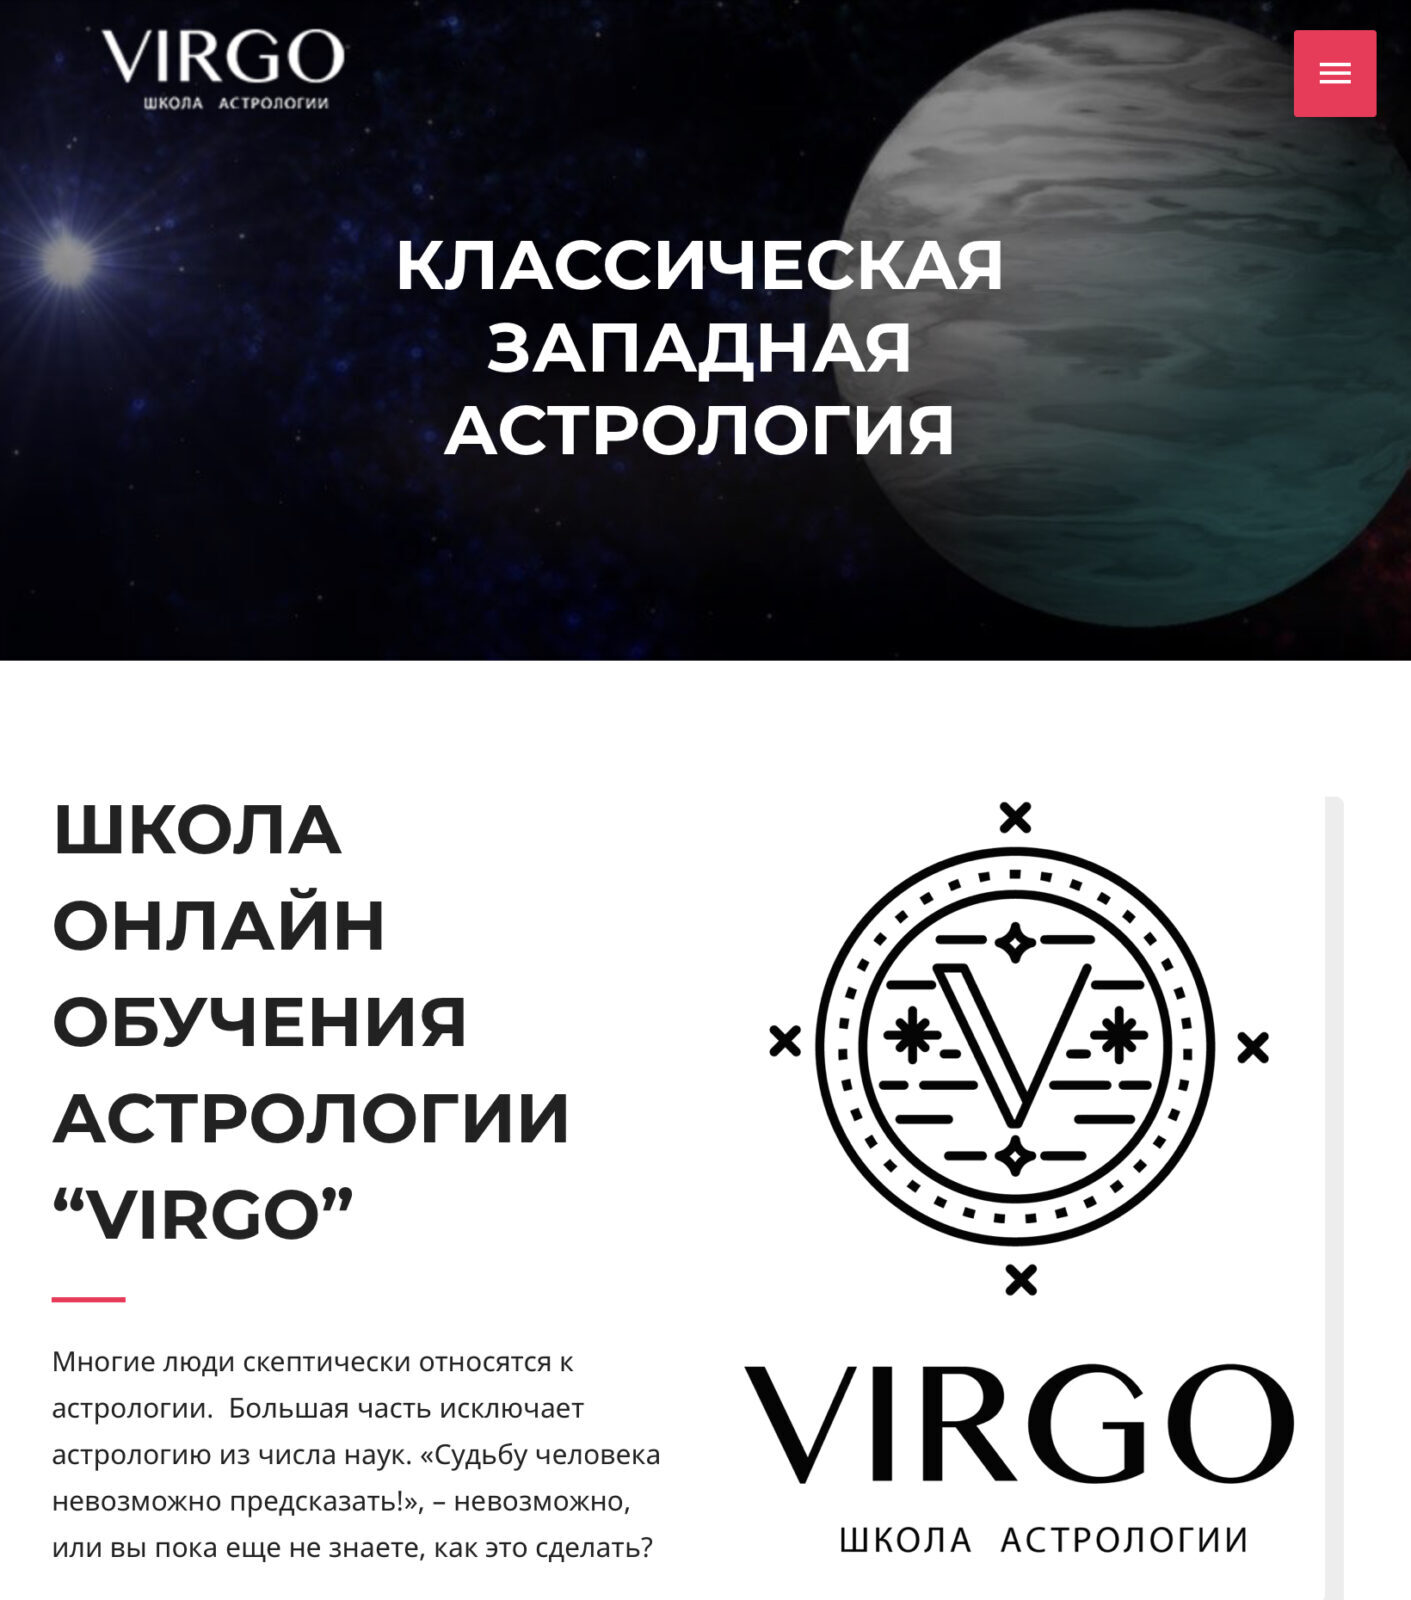 Вирго – Школа предсказательной астрологии сайт